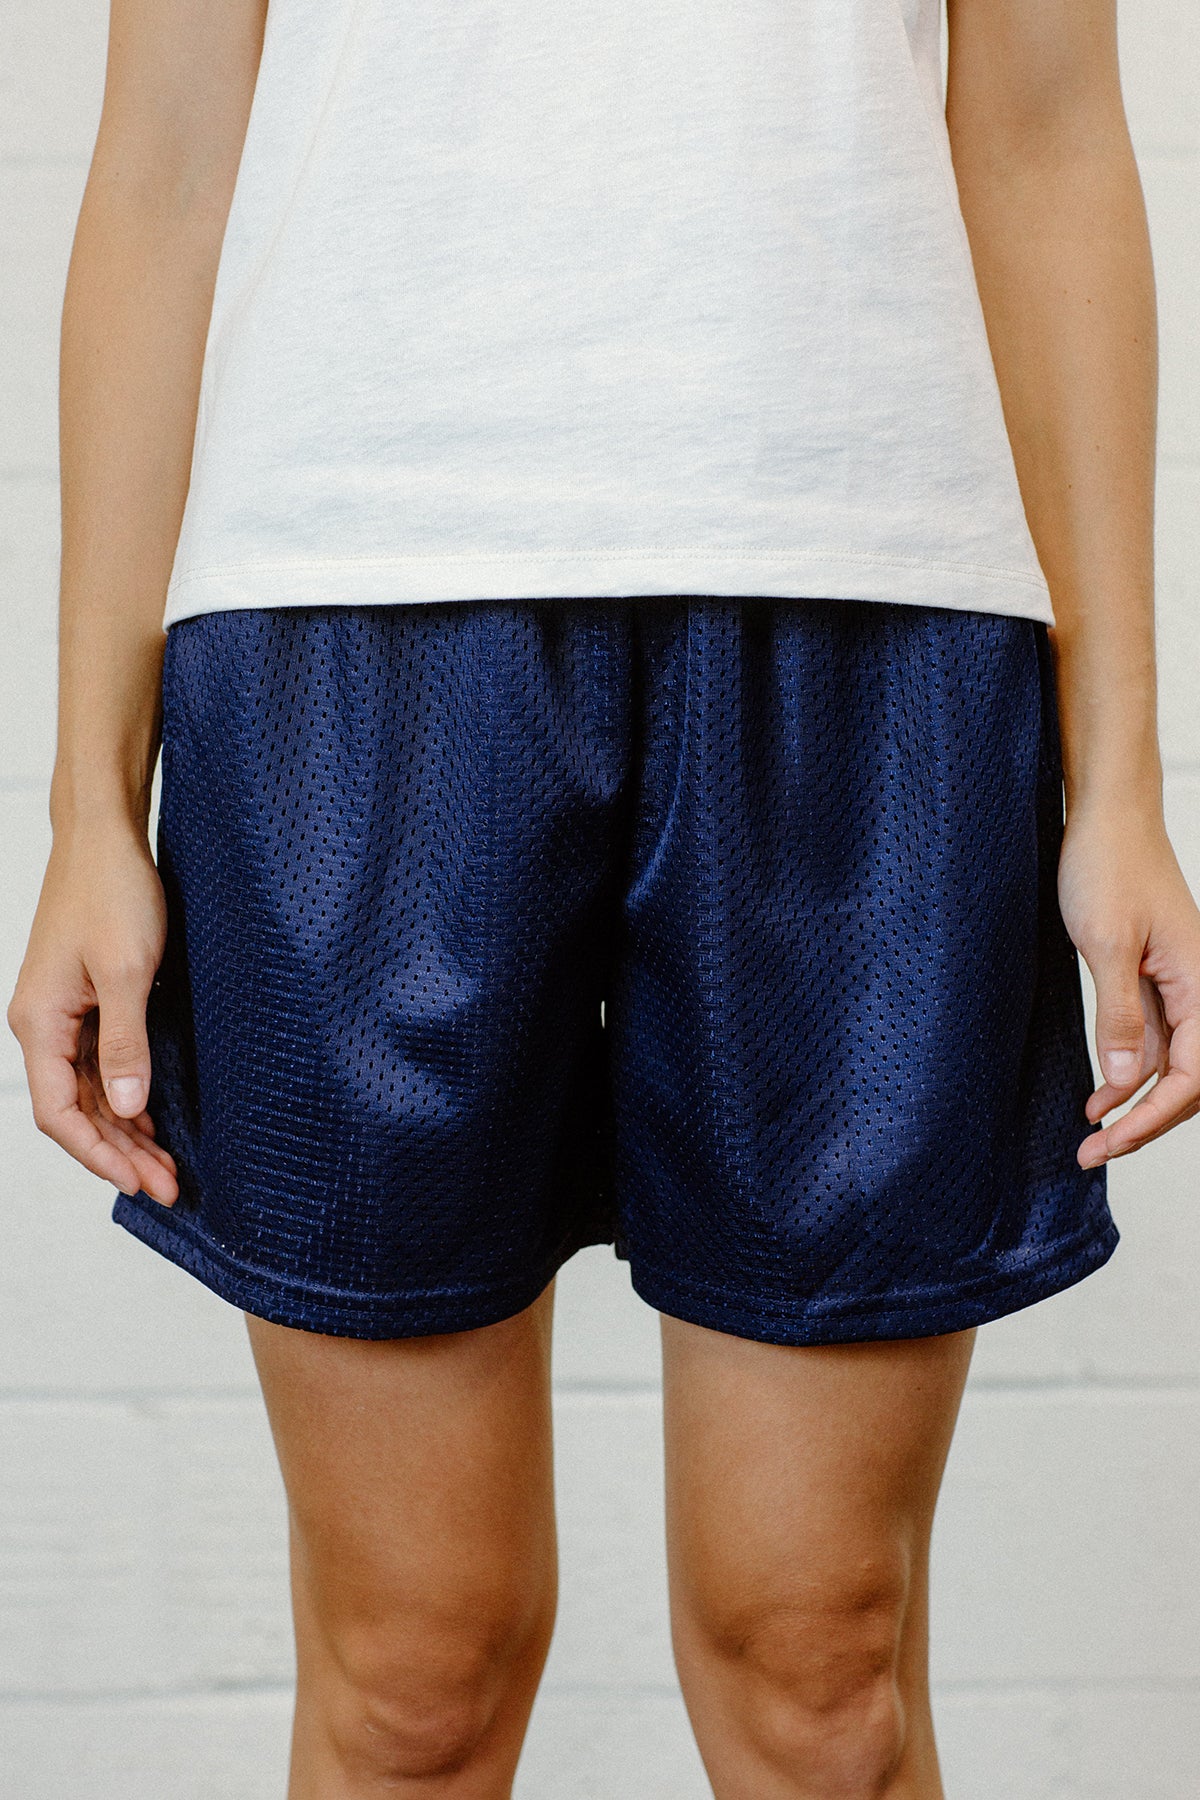 MSPP054 - Unisex Mesh Gym Shorts - Navy Blue – LA Speedy